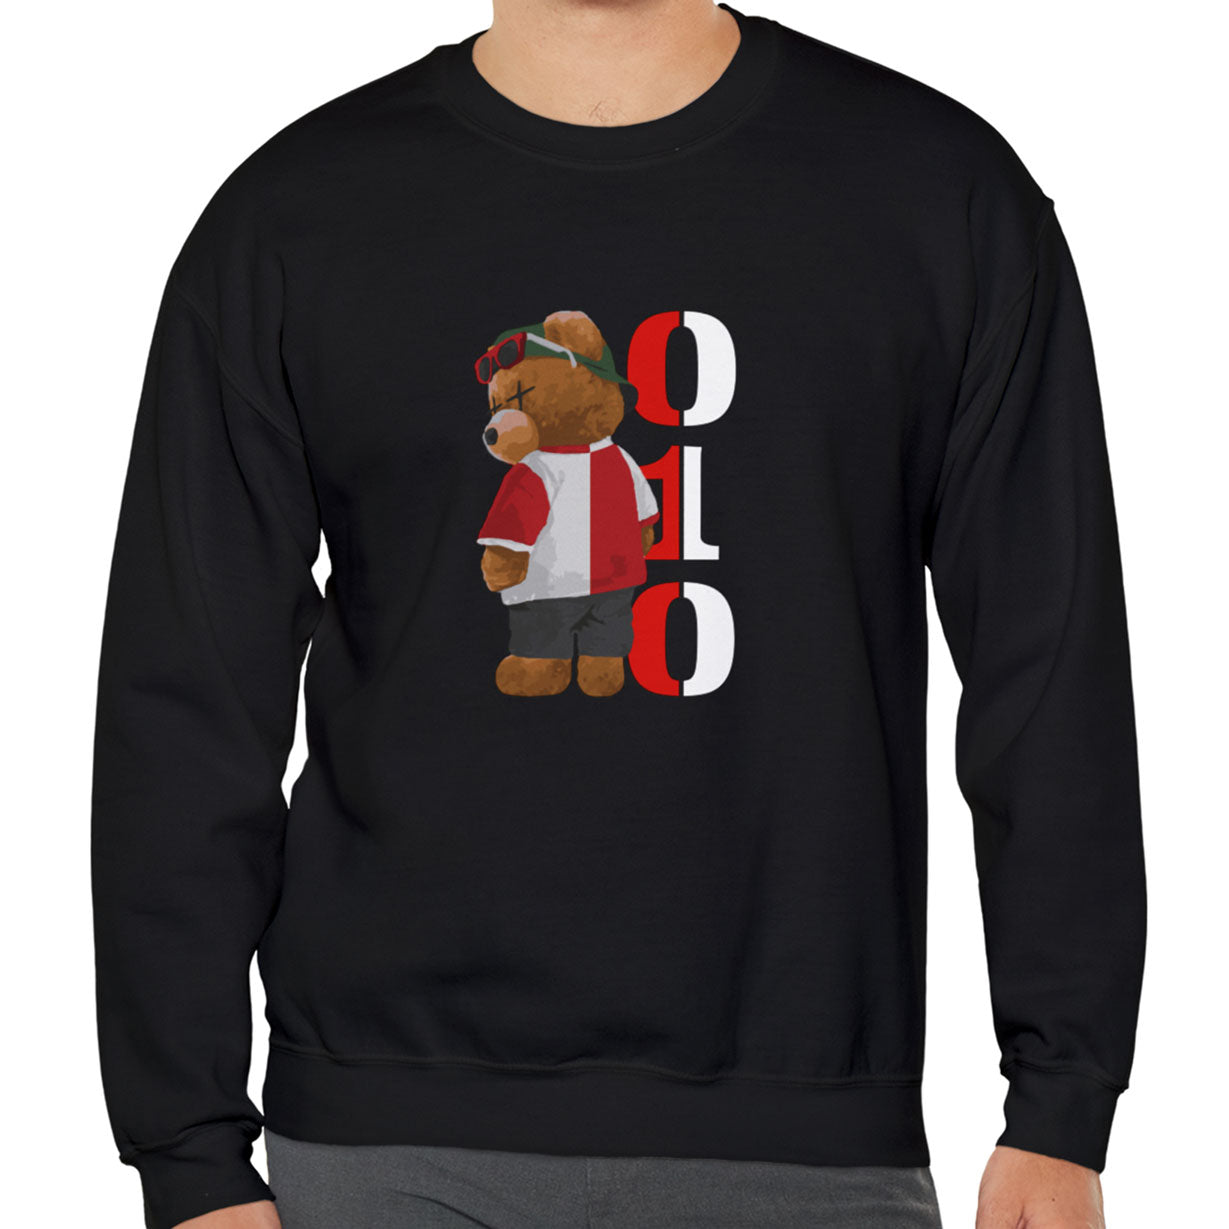 Sweater met Feyenoord beer en 010 design